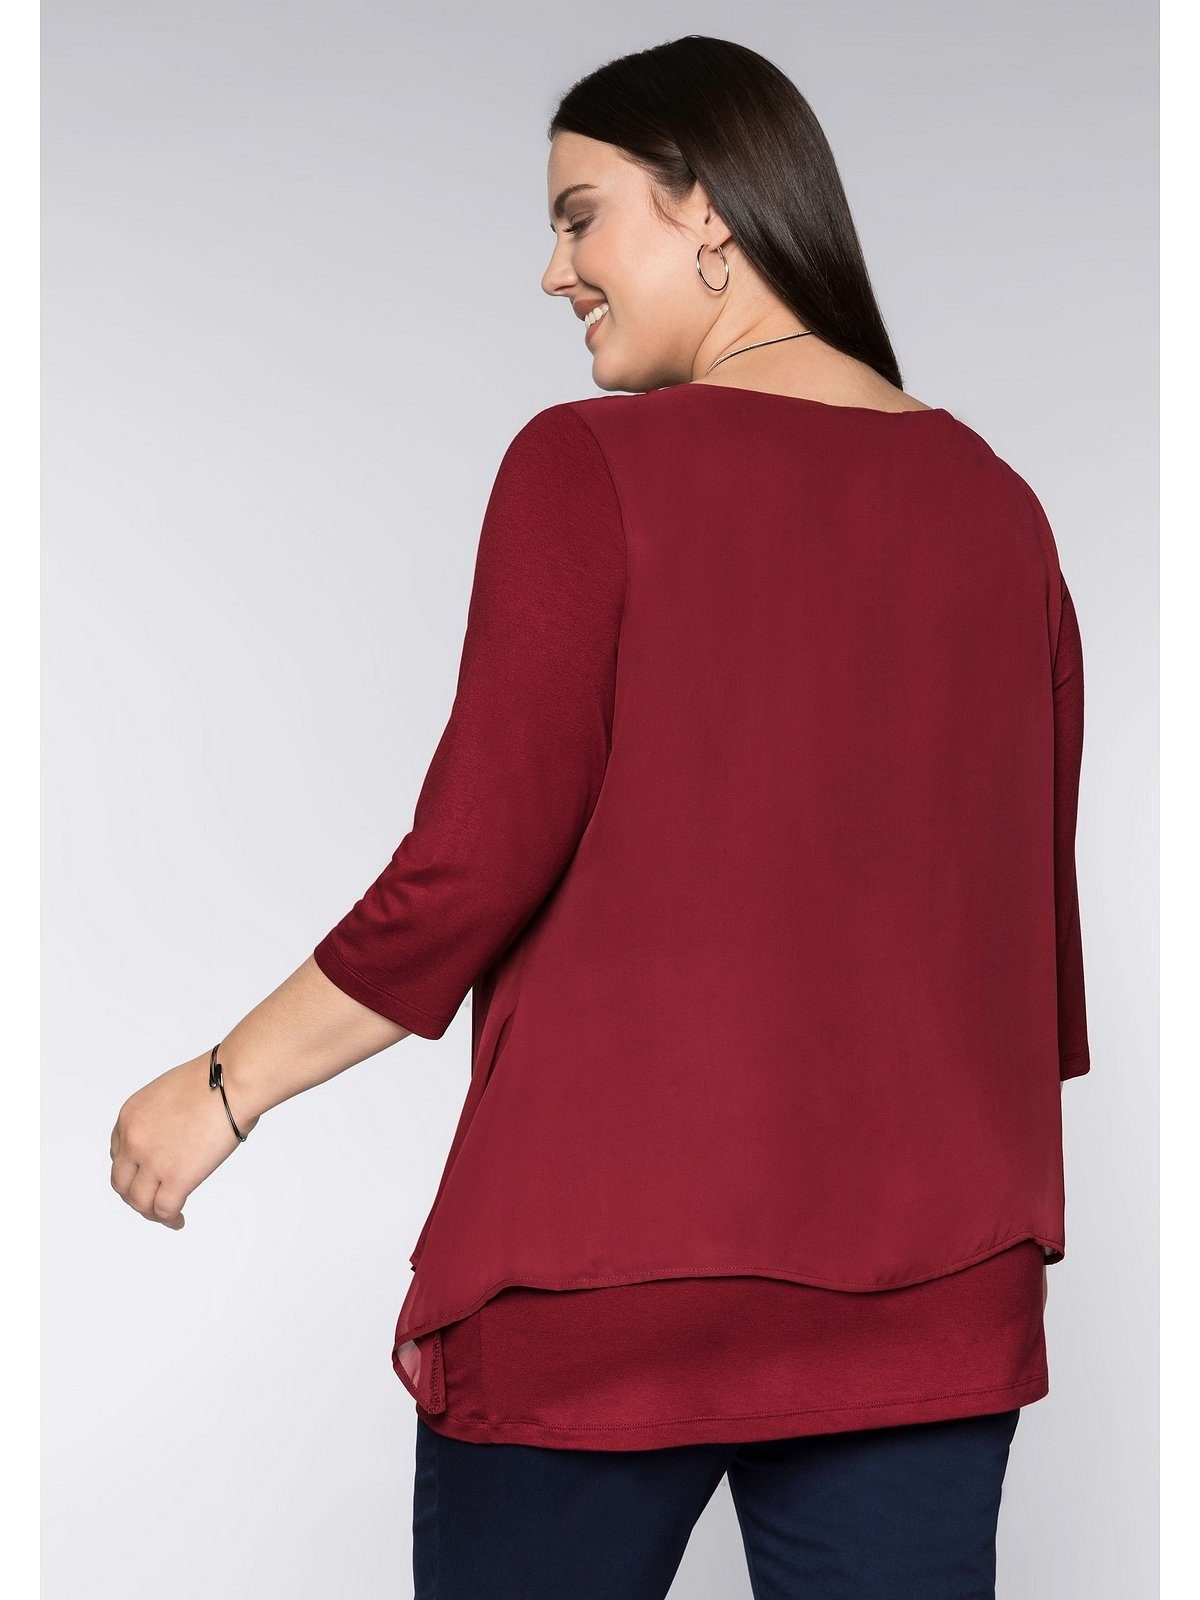 A-Linie Blusenshirt leichter Zipfelsaum mit Große Sheego rubinrot Größen in